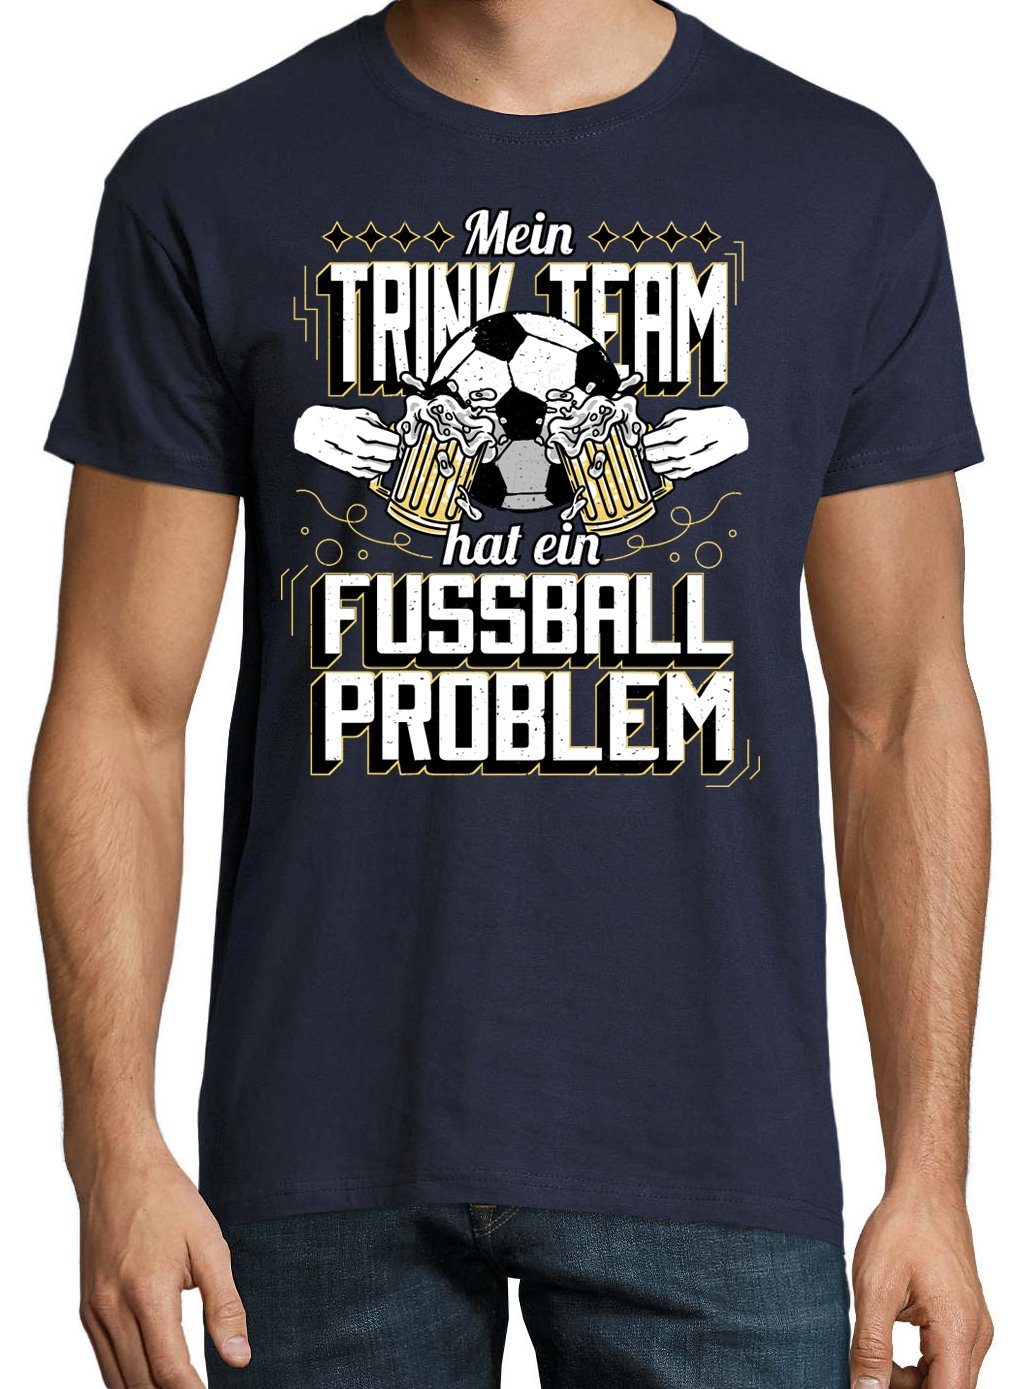 Navyblau Problem" trendigem "Mein T-Shirt Hat Shirt Ein Fußball Designz Frontprint Youth mit Trinkteam Herren